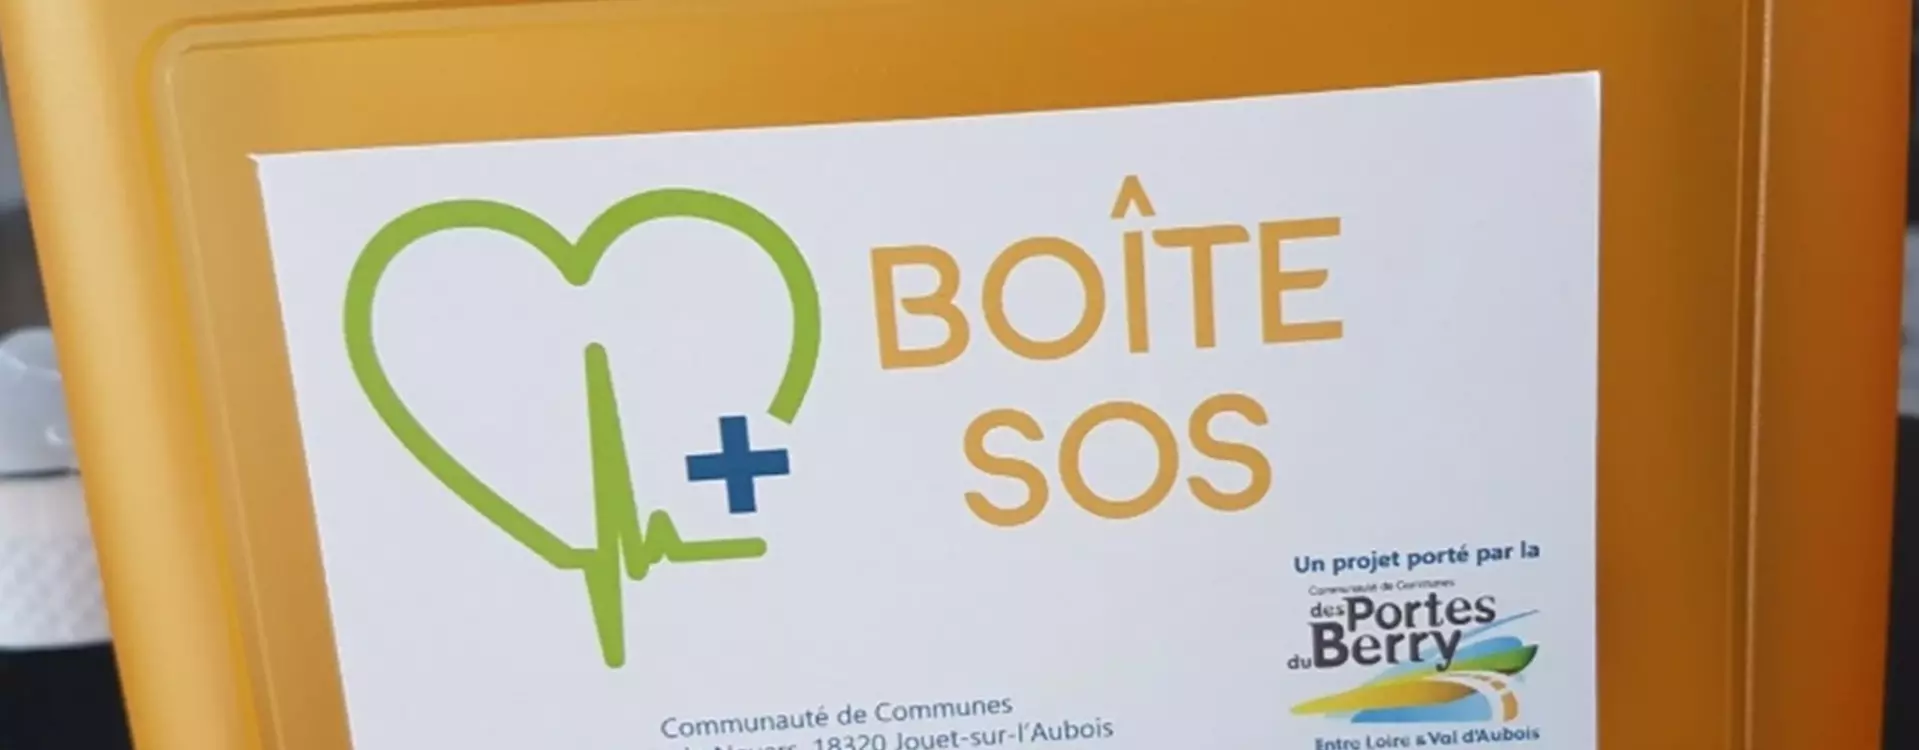 Boite SOS de Cours-les-Barres